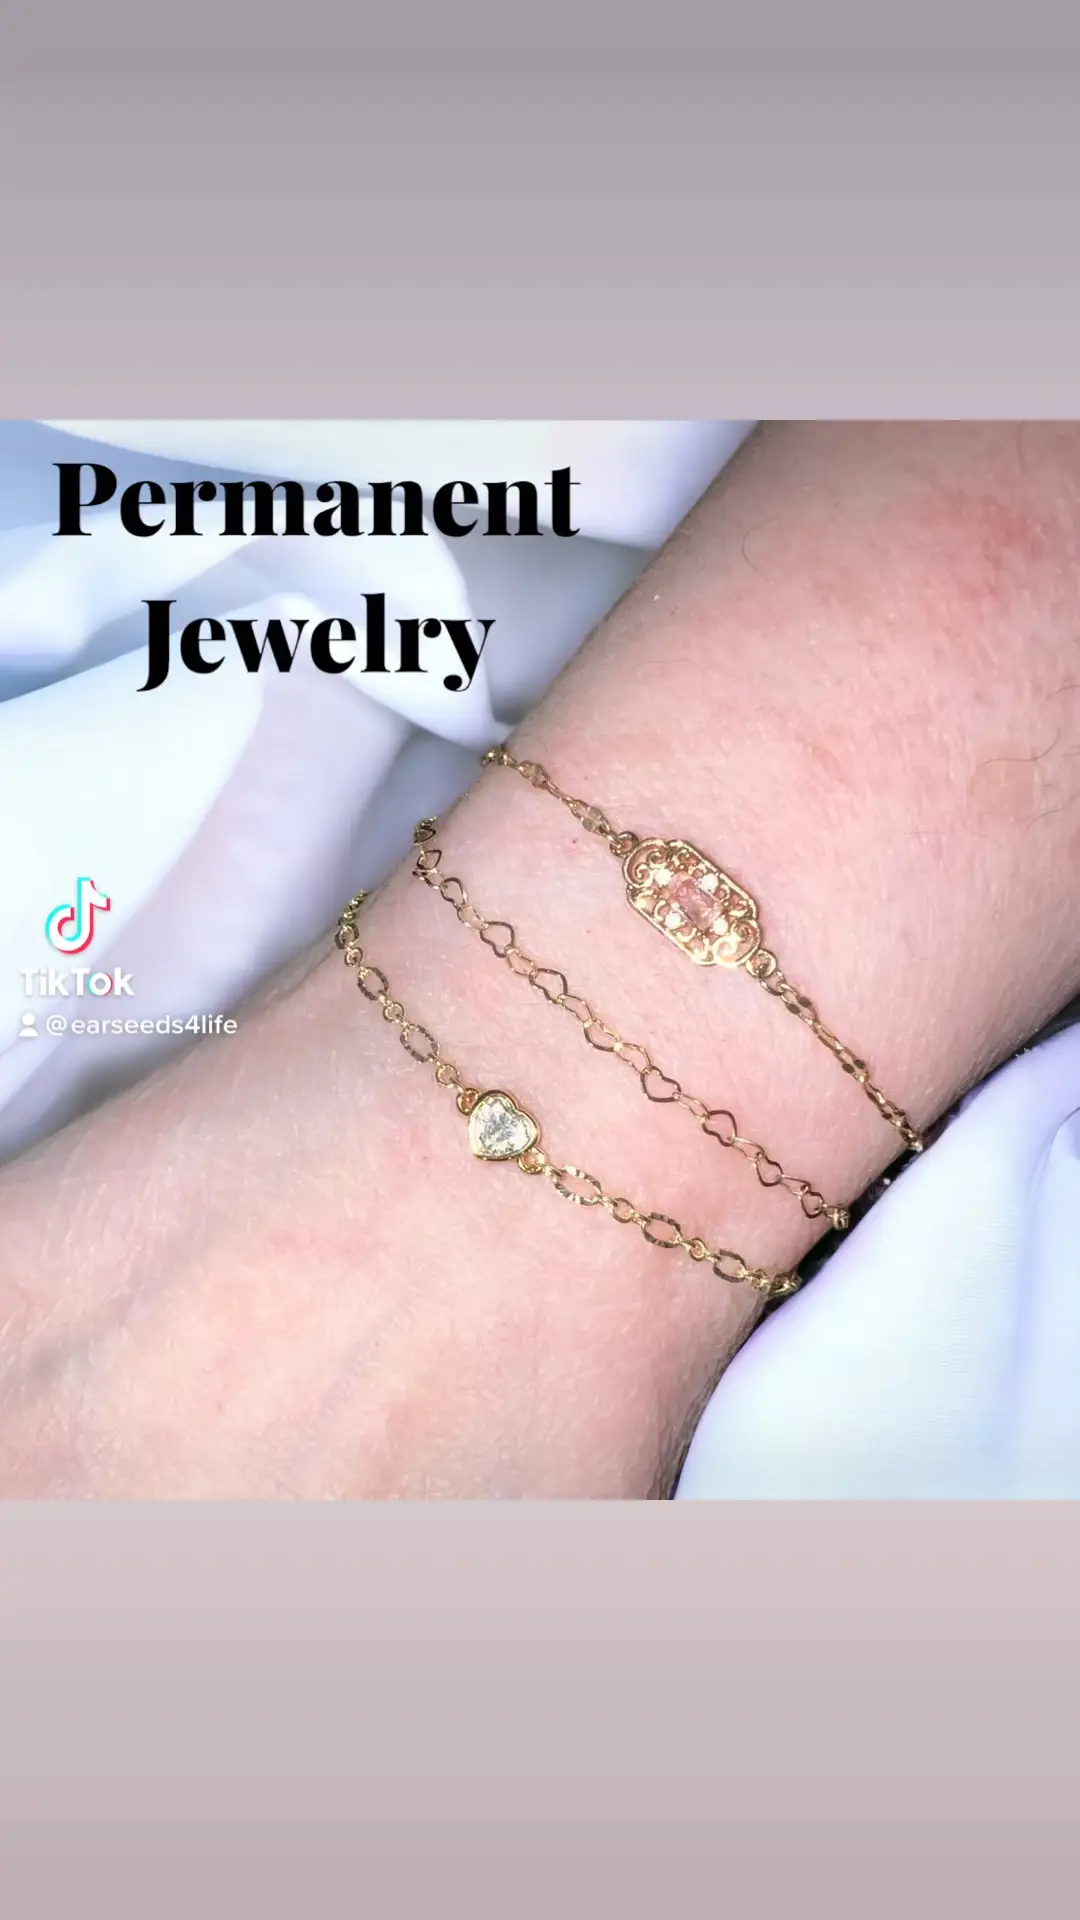 permanent bracelet kit - Lemon8 Search